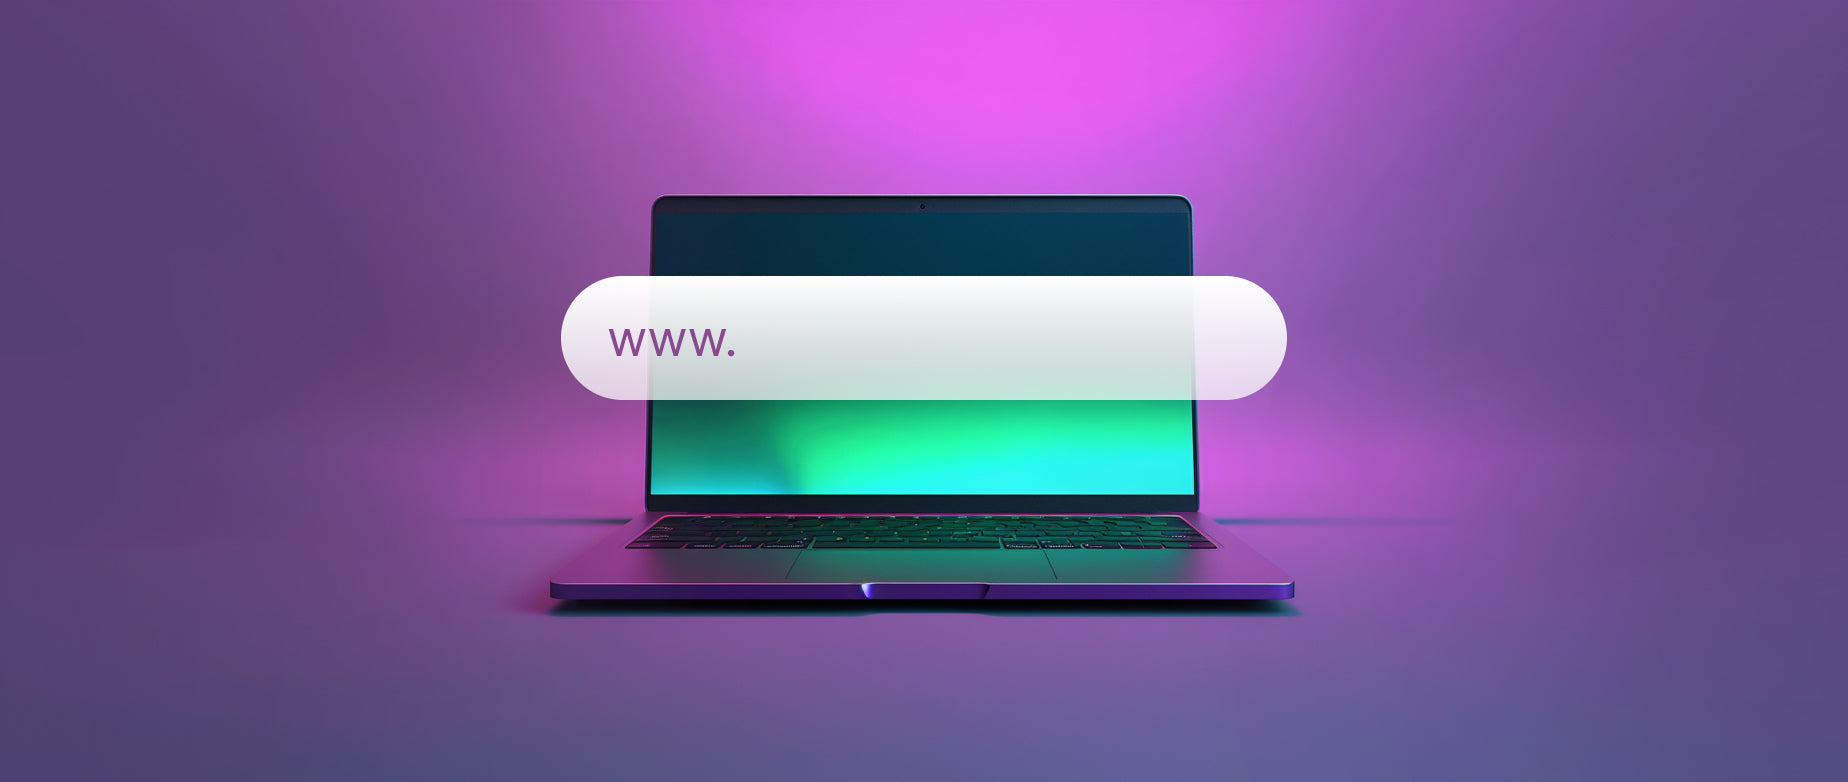 如何注册域名：笔记本电脑屏幕上显示搜索栏和www